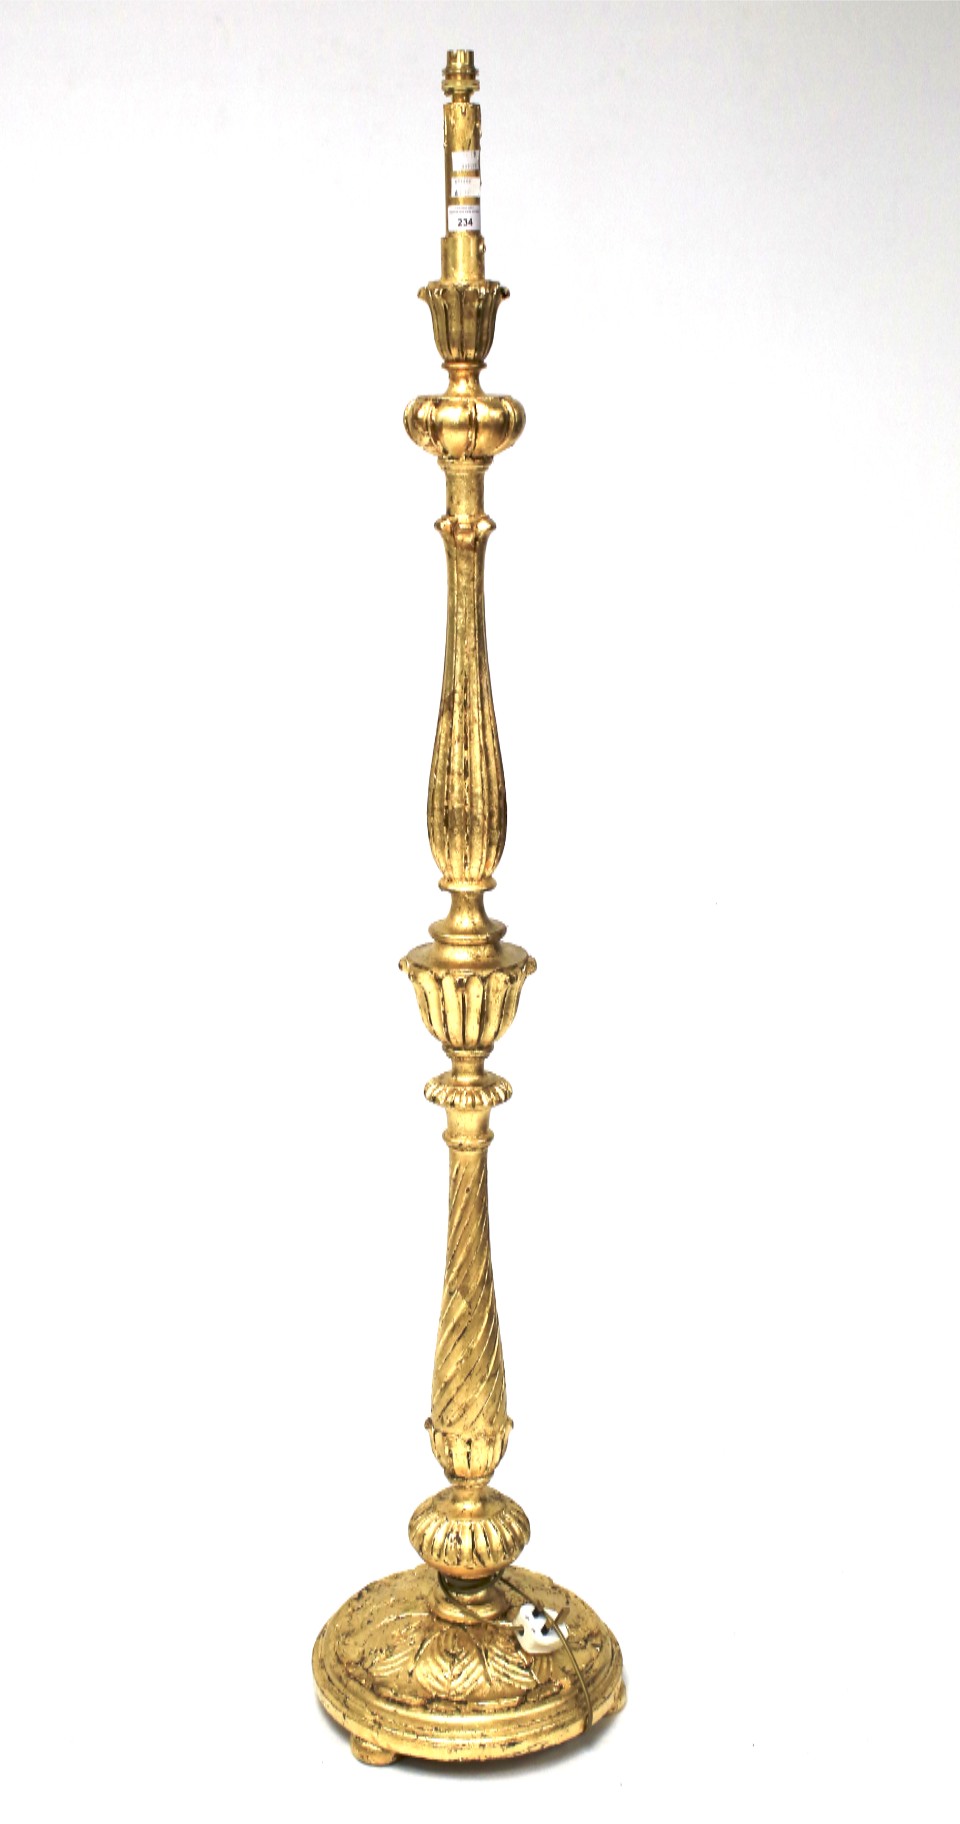 A 20th century gilt wooden standard lamp.